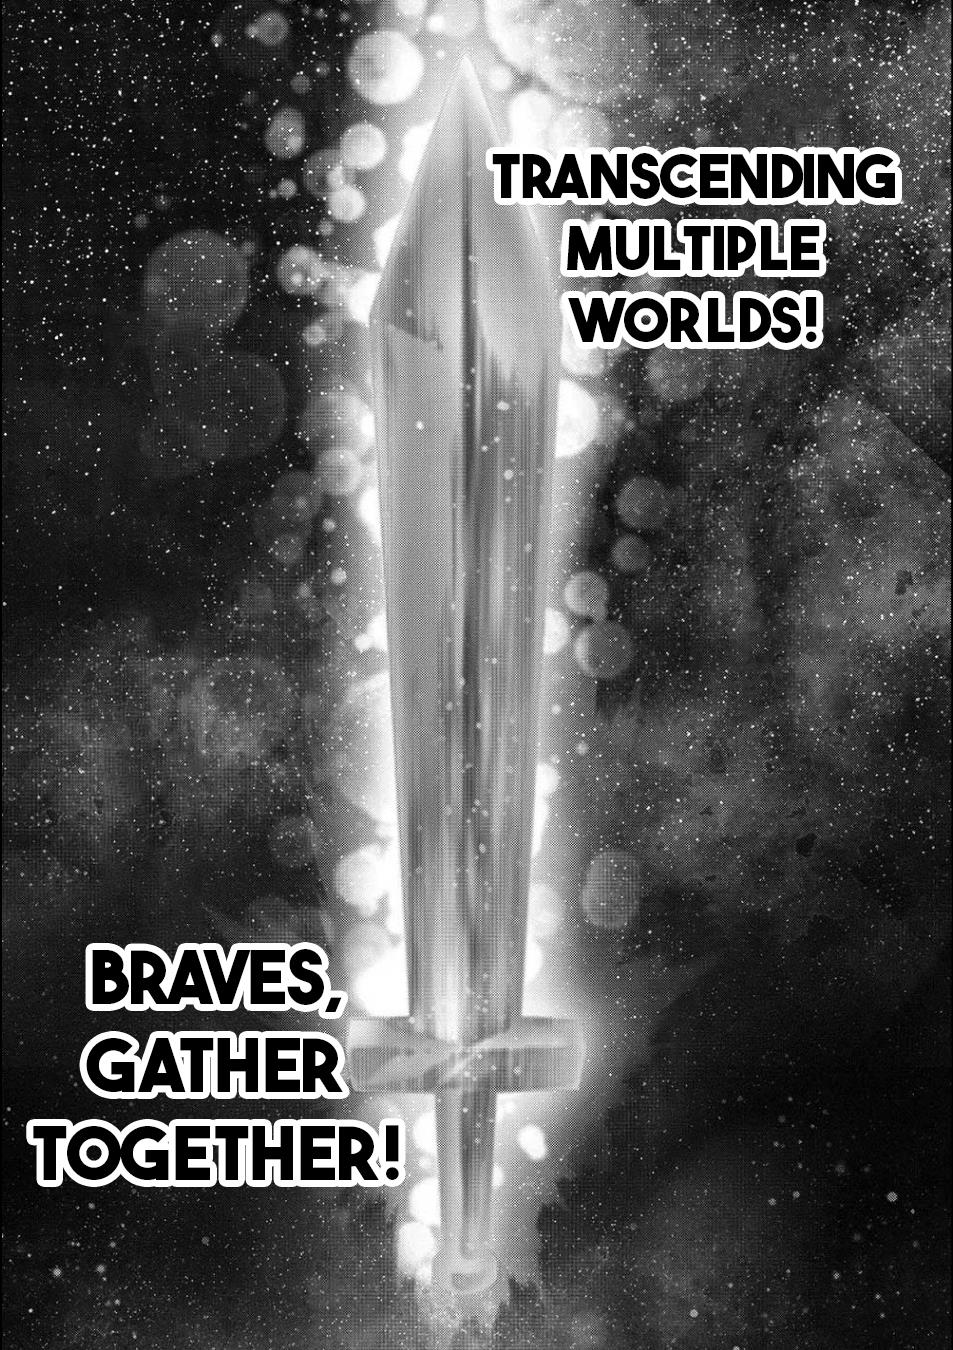 Brave Universe Sworgrader Vol.1 Chapter 1: Alien Advent! A New Brave Arrives! (Part 1) - Picture 1